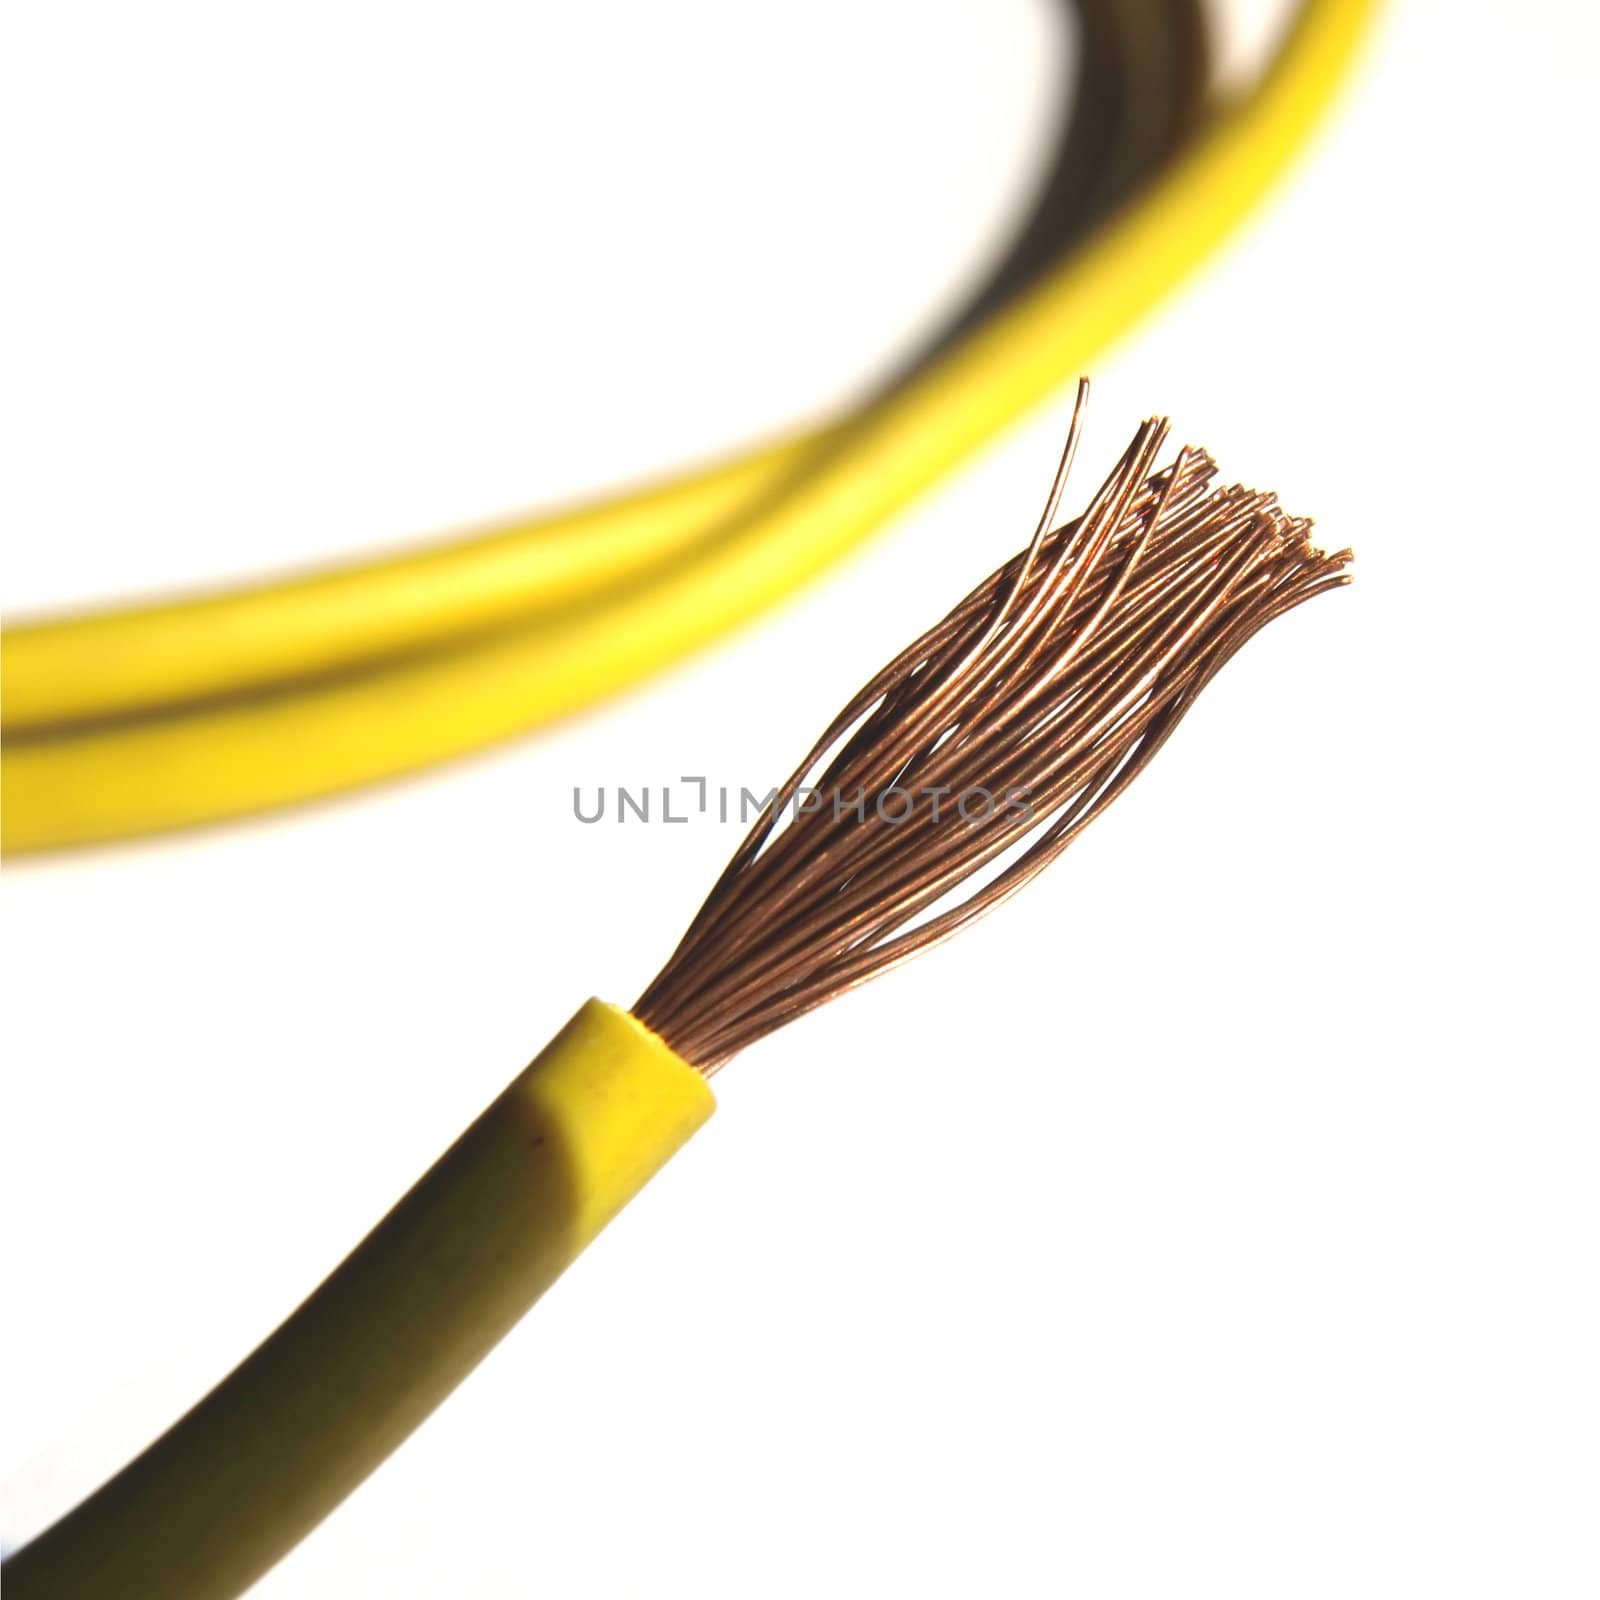 Electric copper wire